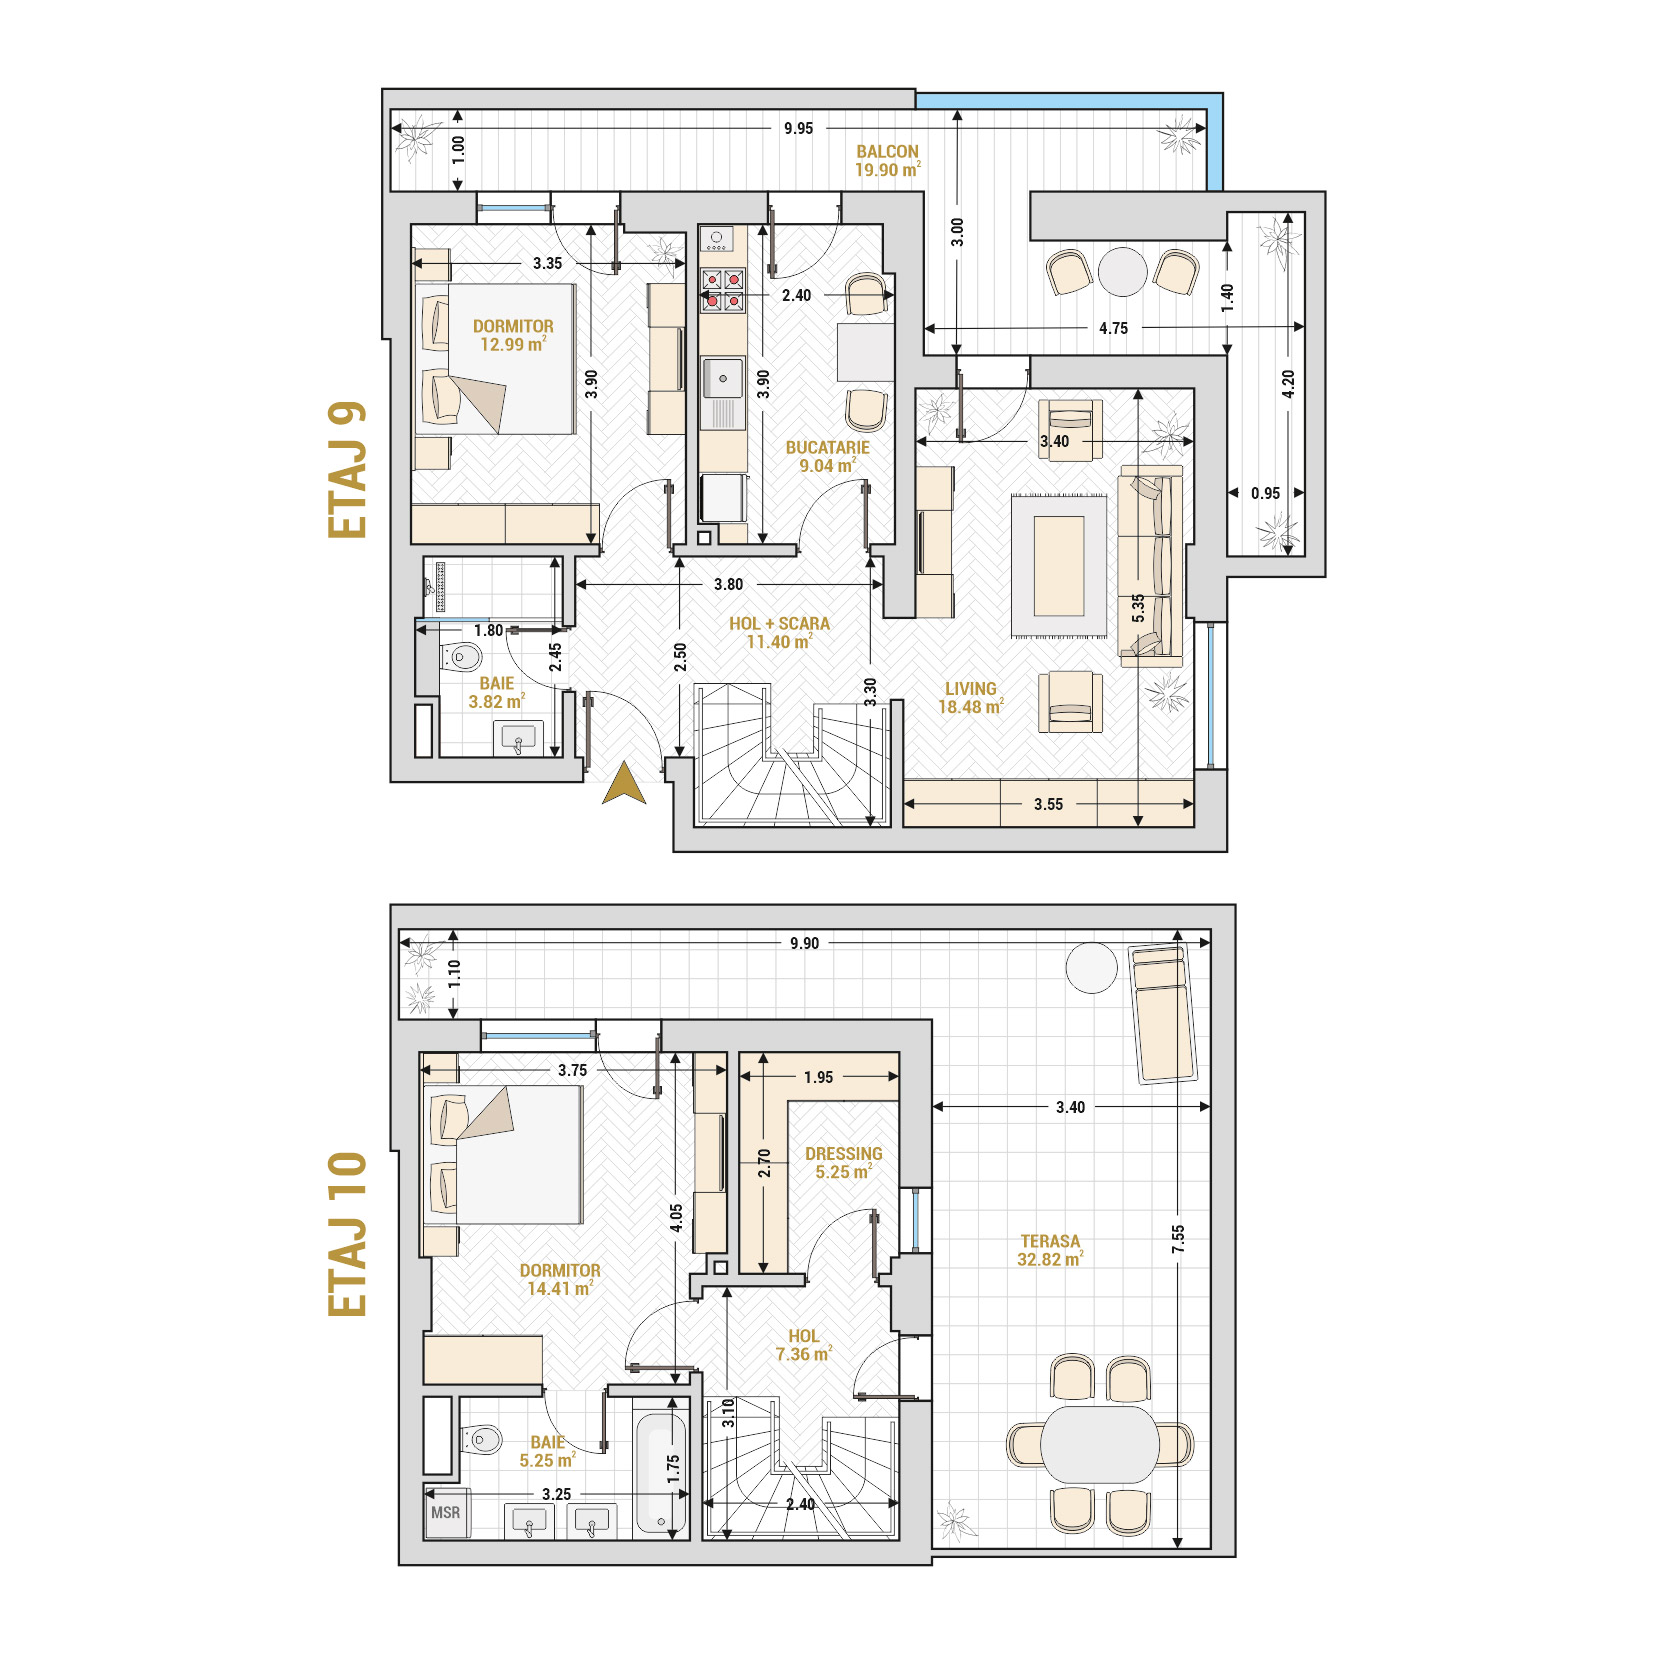 Penthouse 3 Camere Tip 2 Corp 2 - Drumul Taberei Residence - Apartamente de vanzare Bucuresti - Suprafata utila totala - 140.72 mp